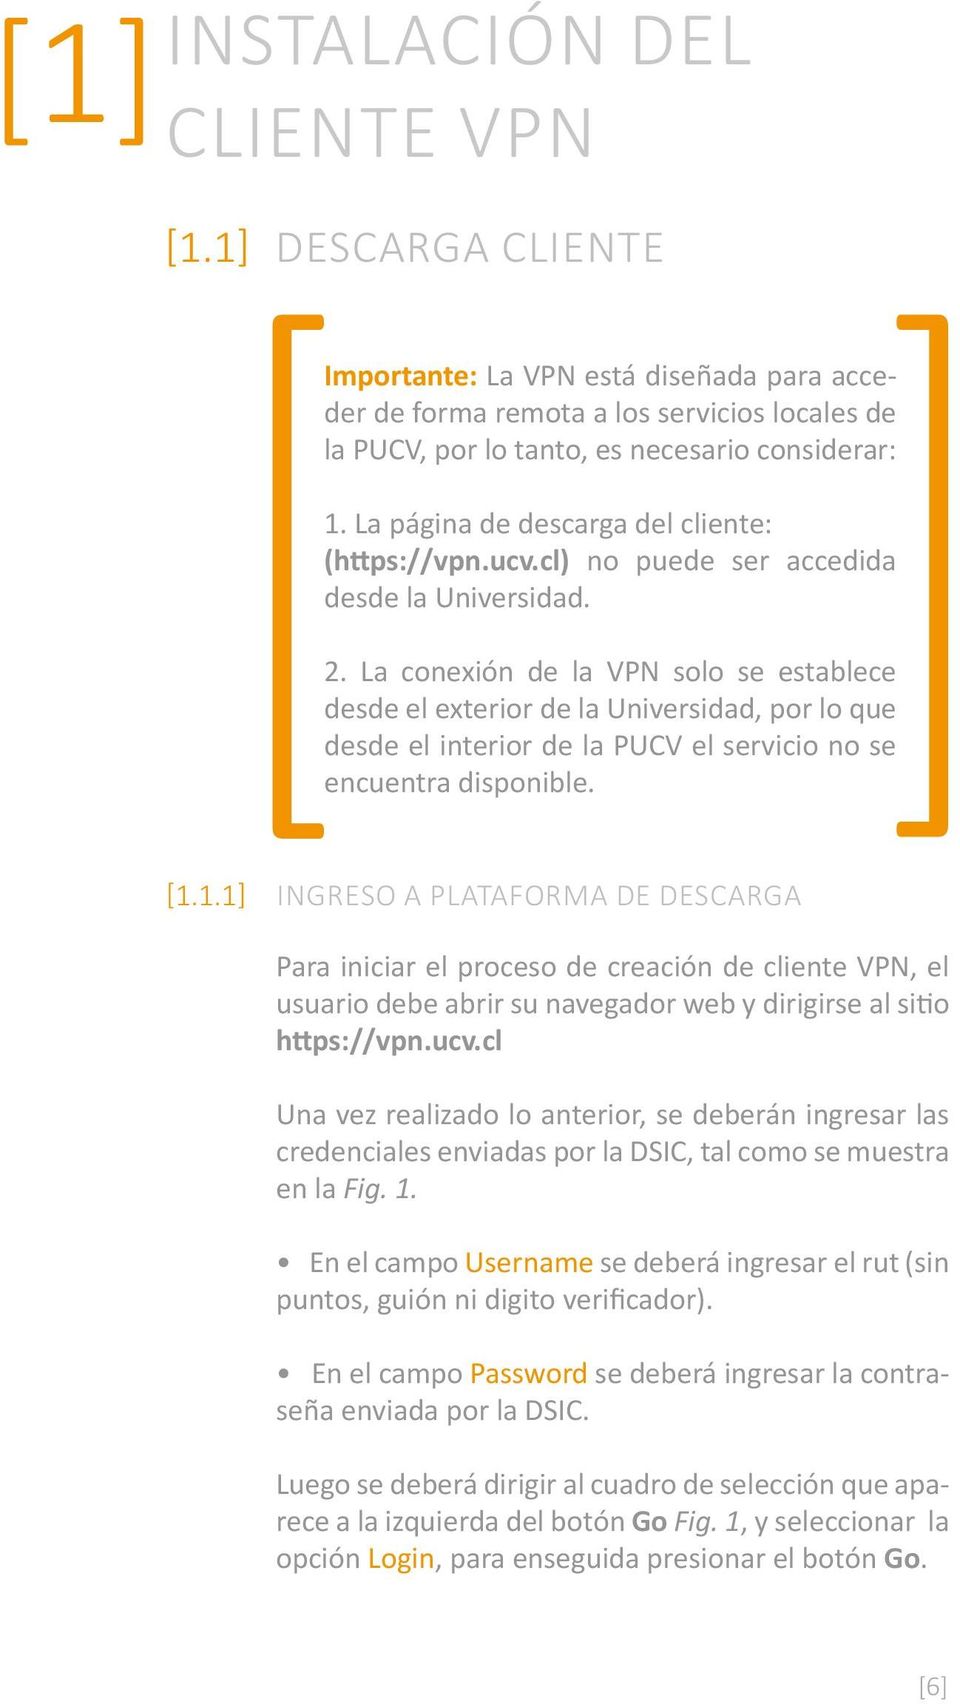 La conexión de la VPN solo se establece desde el exterior de la Universidad, por lo que desde el interior de la PUCV el servicio no se encuentra disponible. [1.